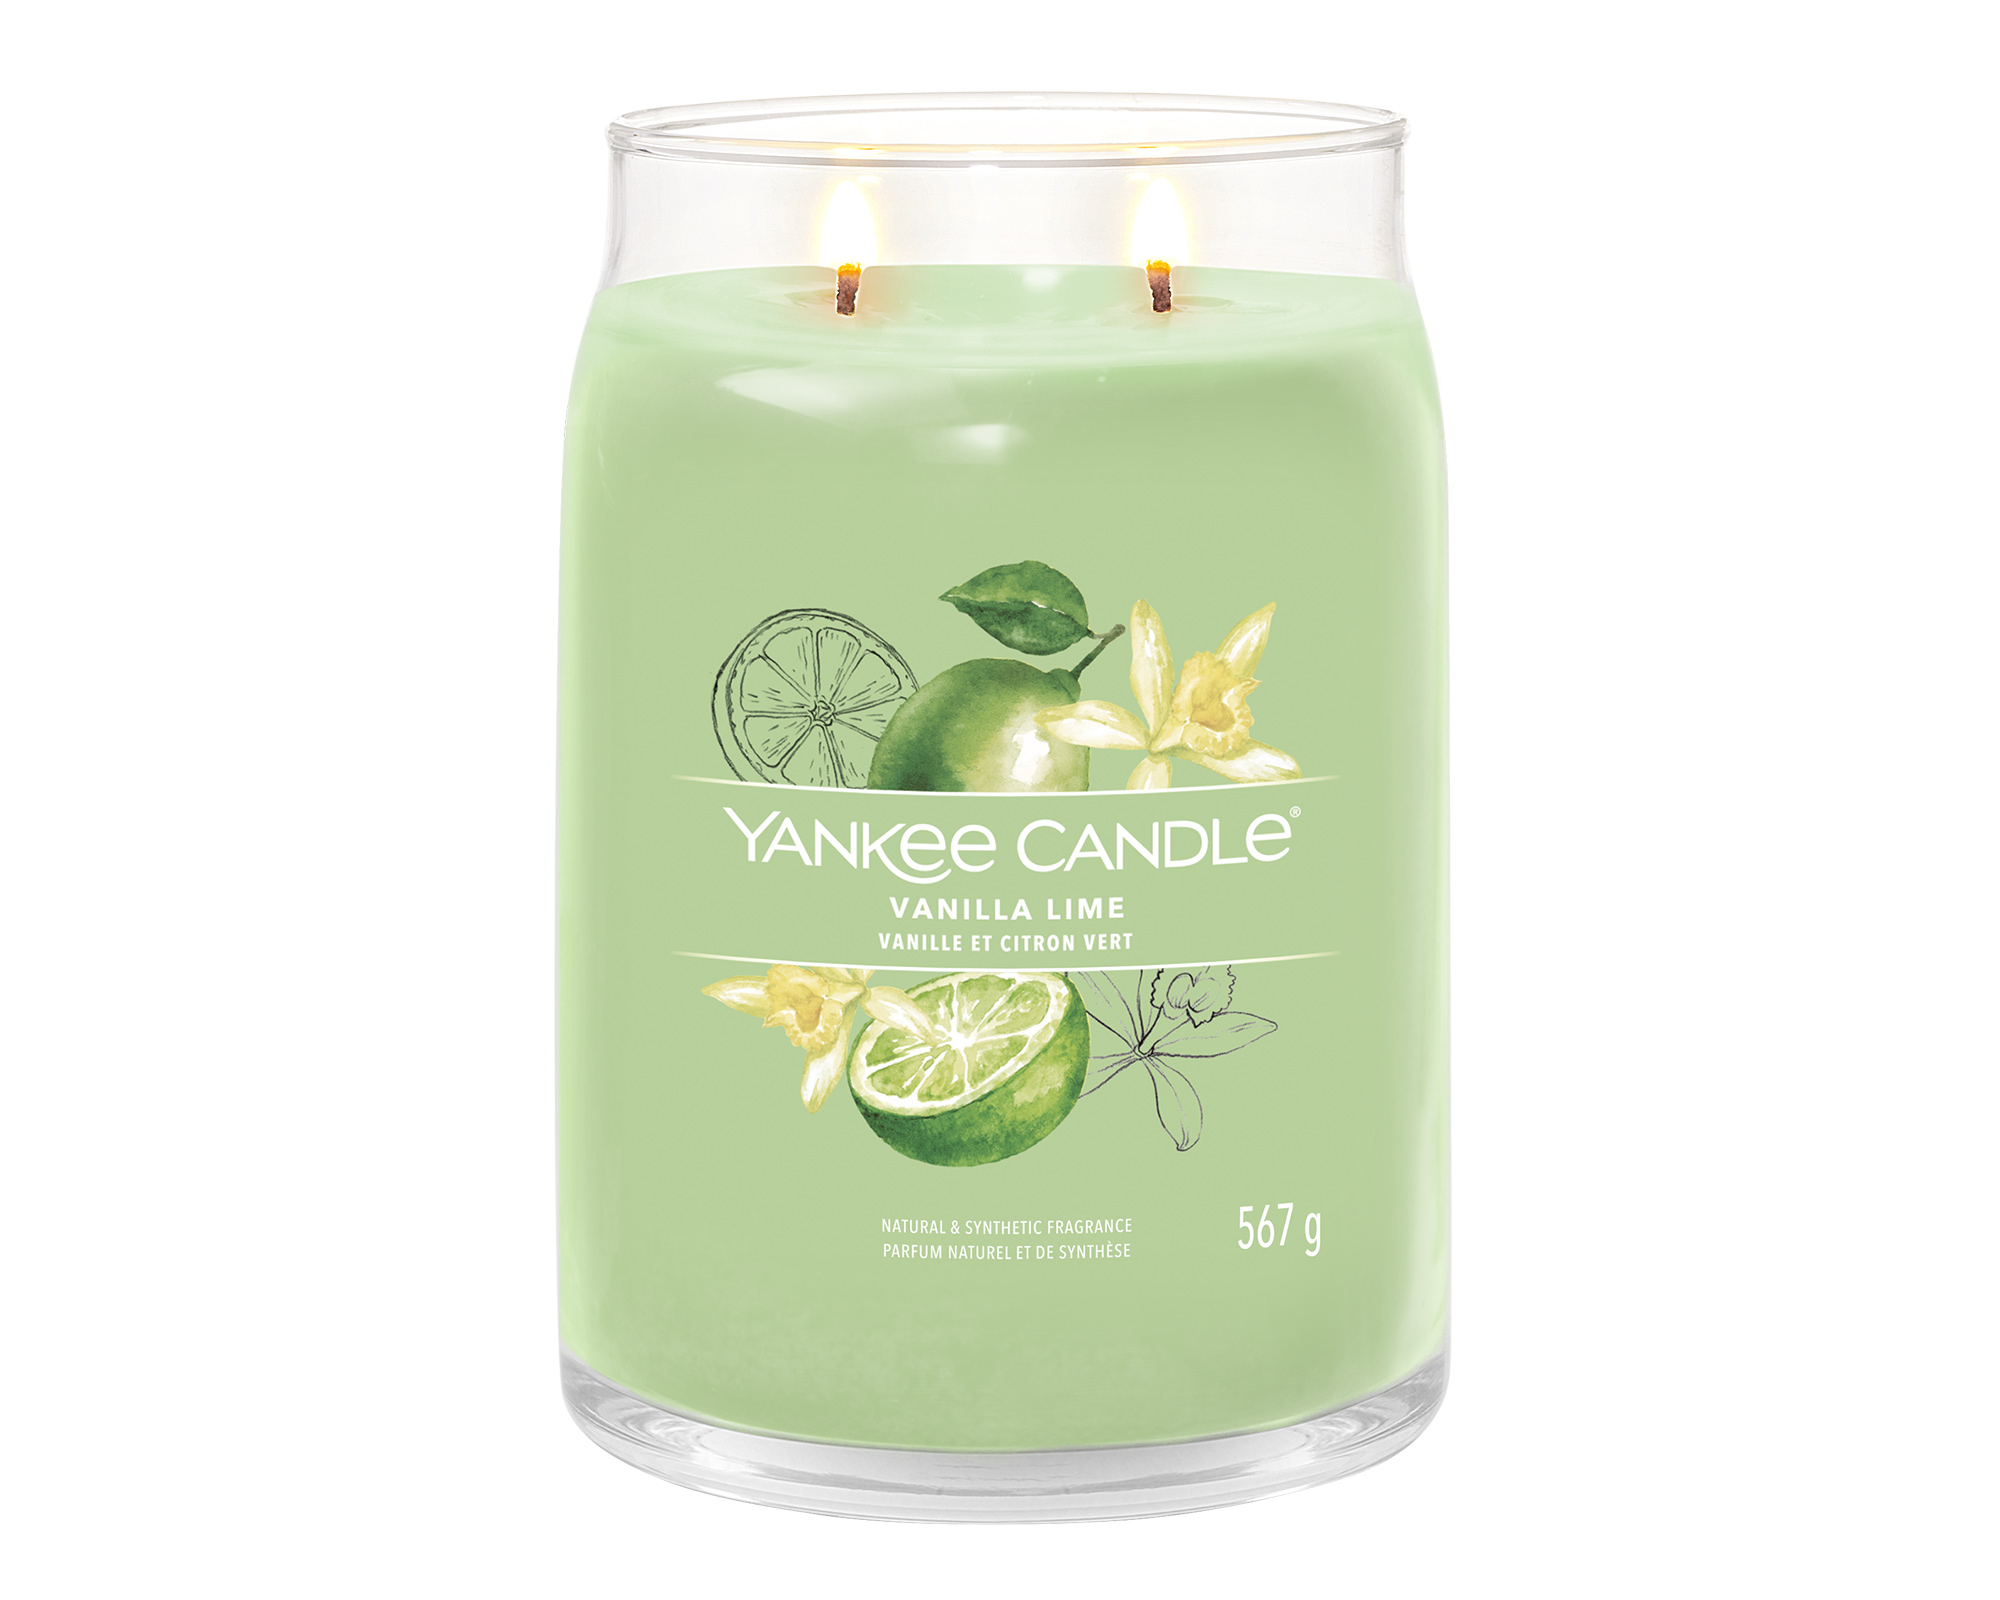 Vanilla Lime – Ricariche Per Profumatore Elettrico Yankee Candle